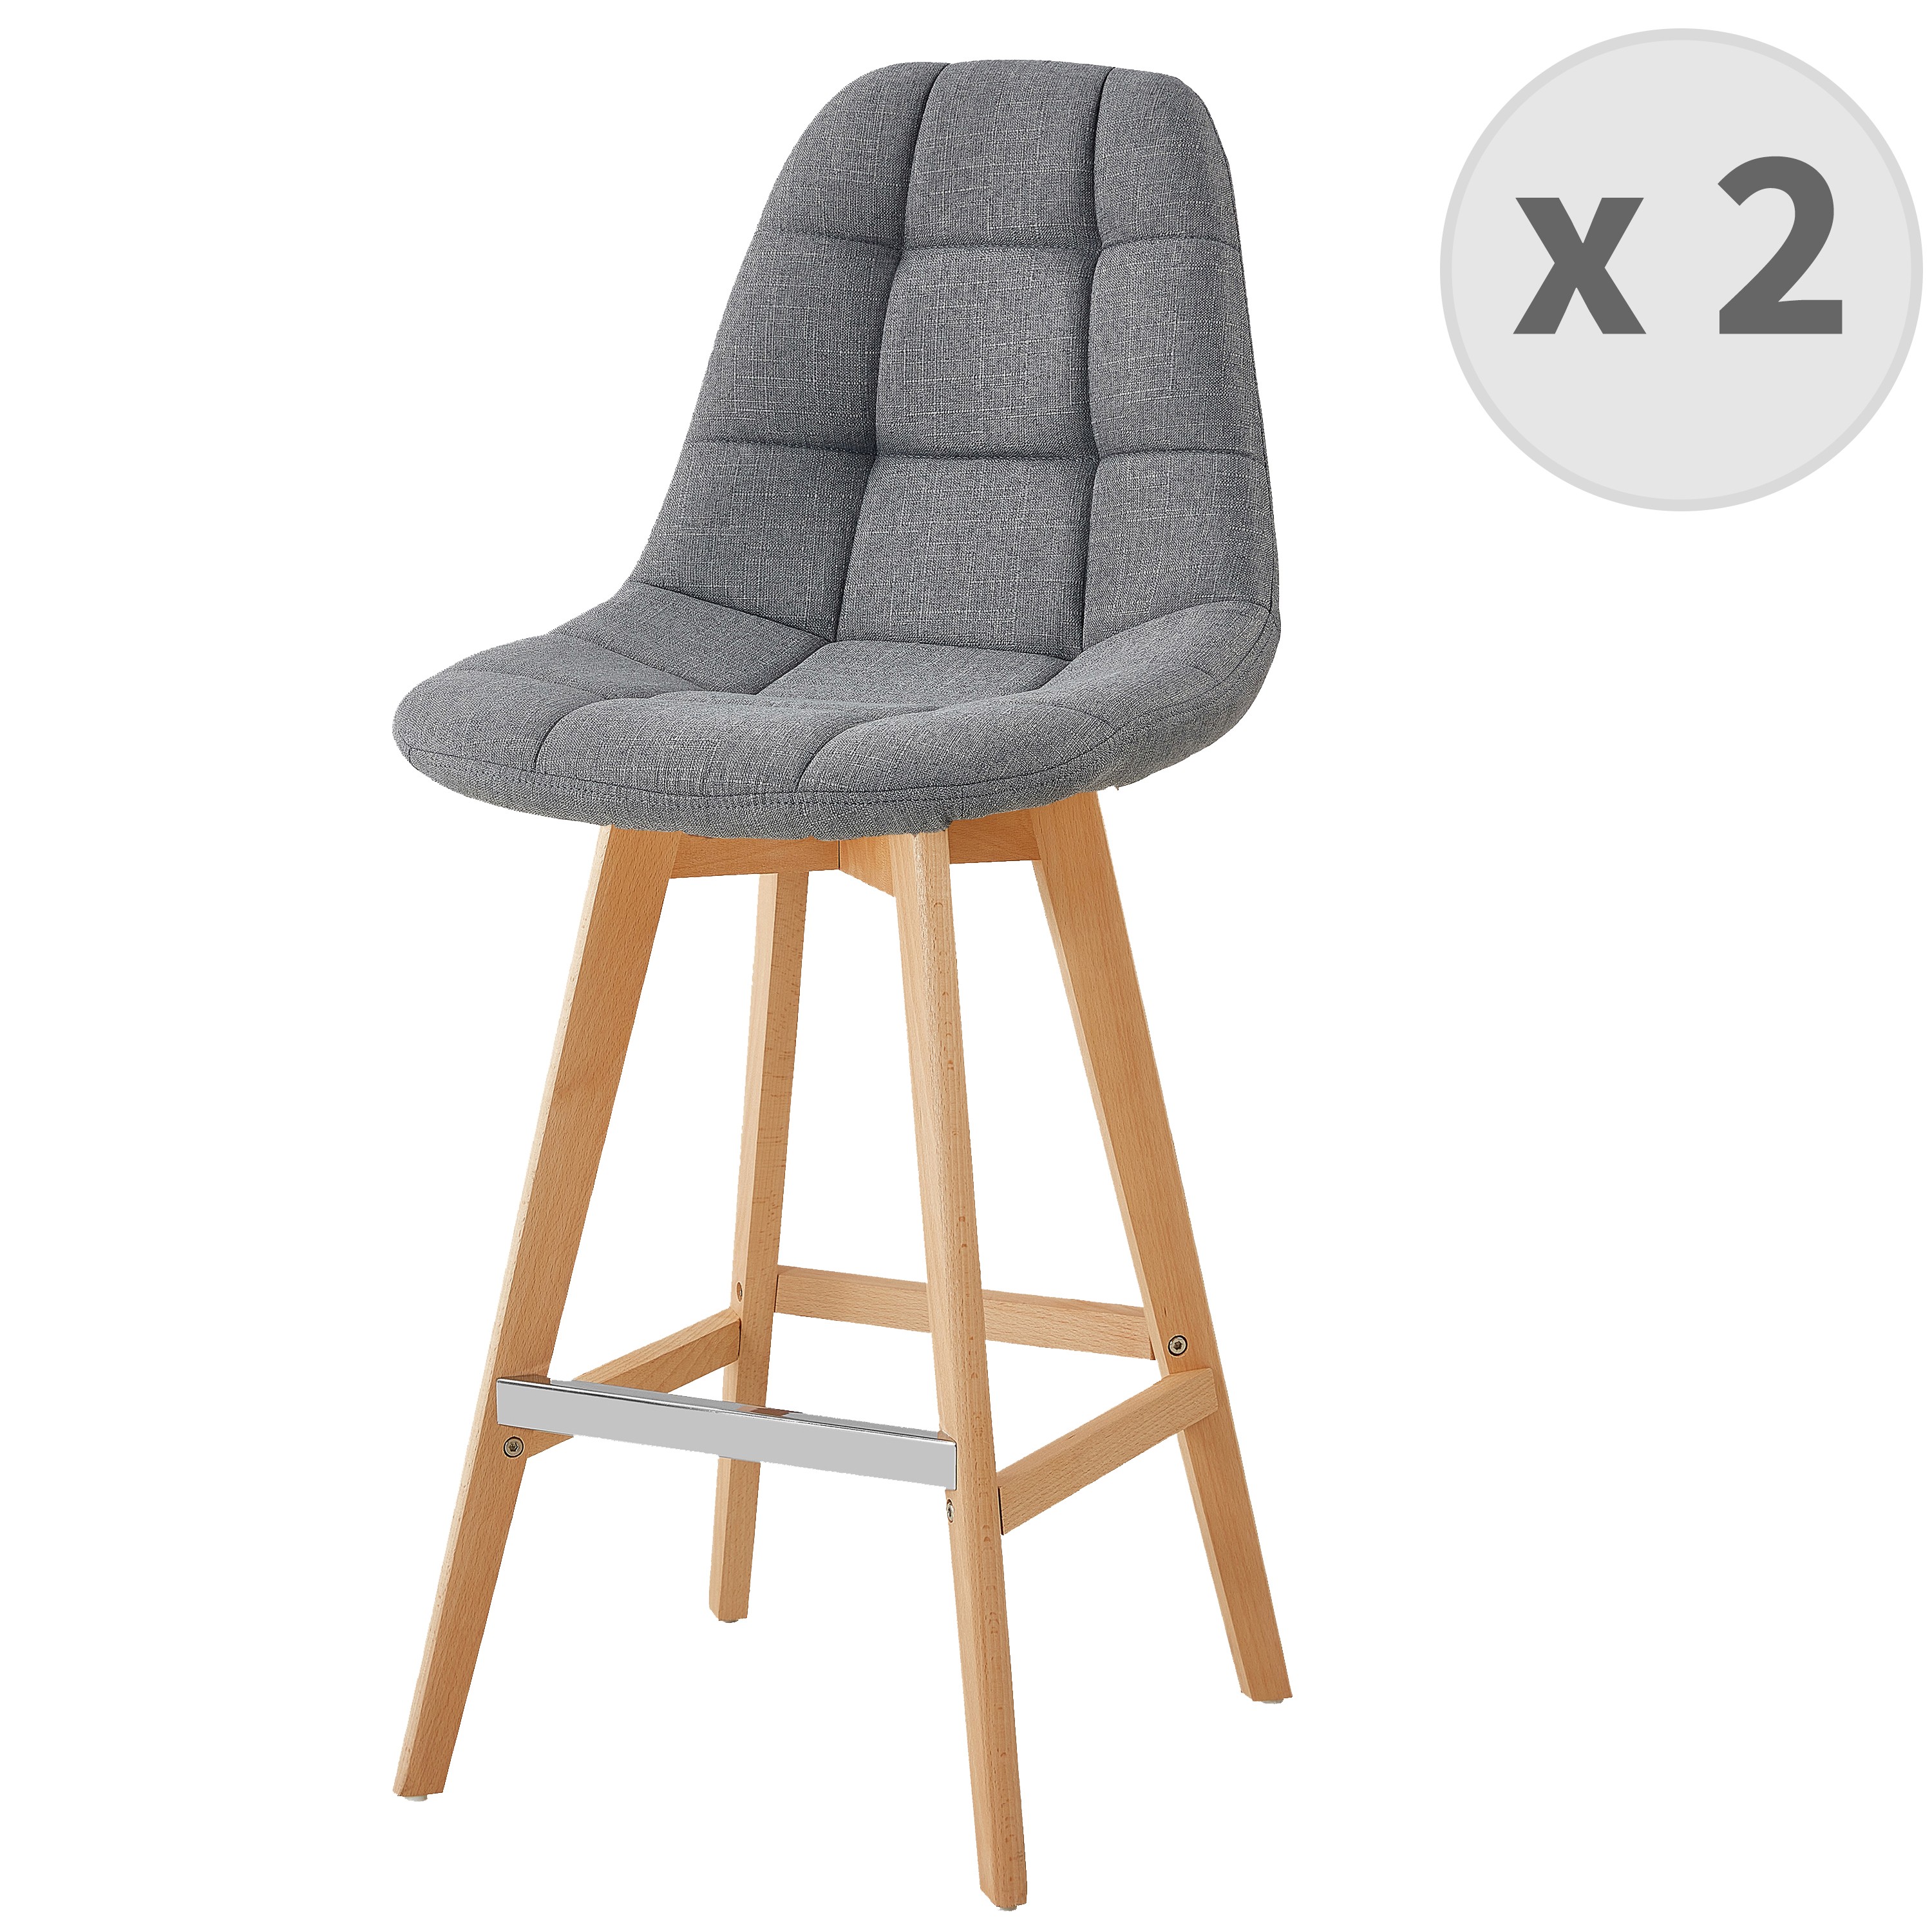 OWEN - Chaise de bar scandinave tissu Gris pied hêtre (x2)